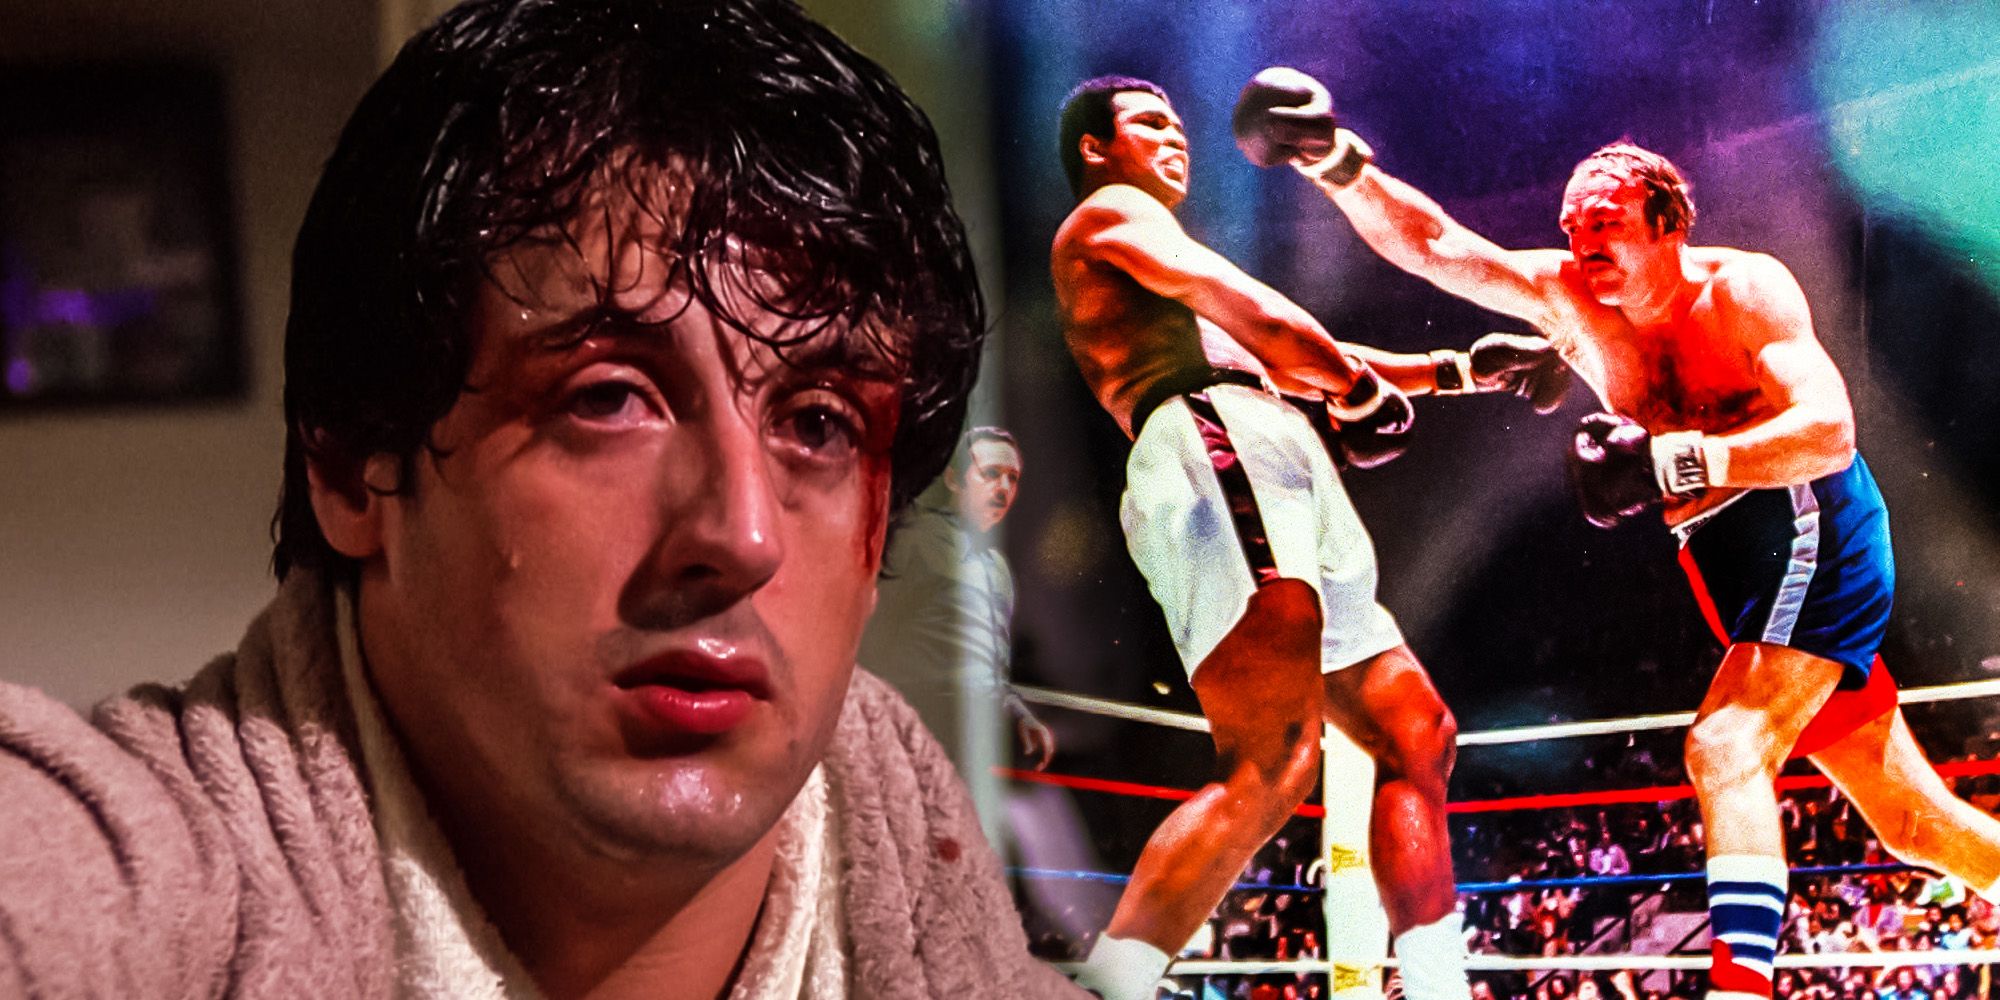 La precuela de Rocky de Stallone puede honrar las inspiraciones originales de Balboa y Creed